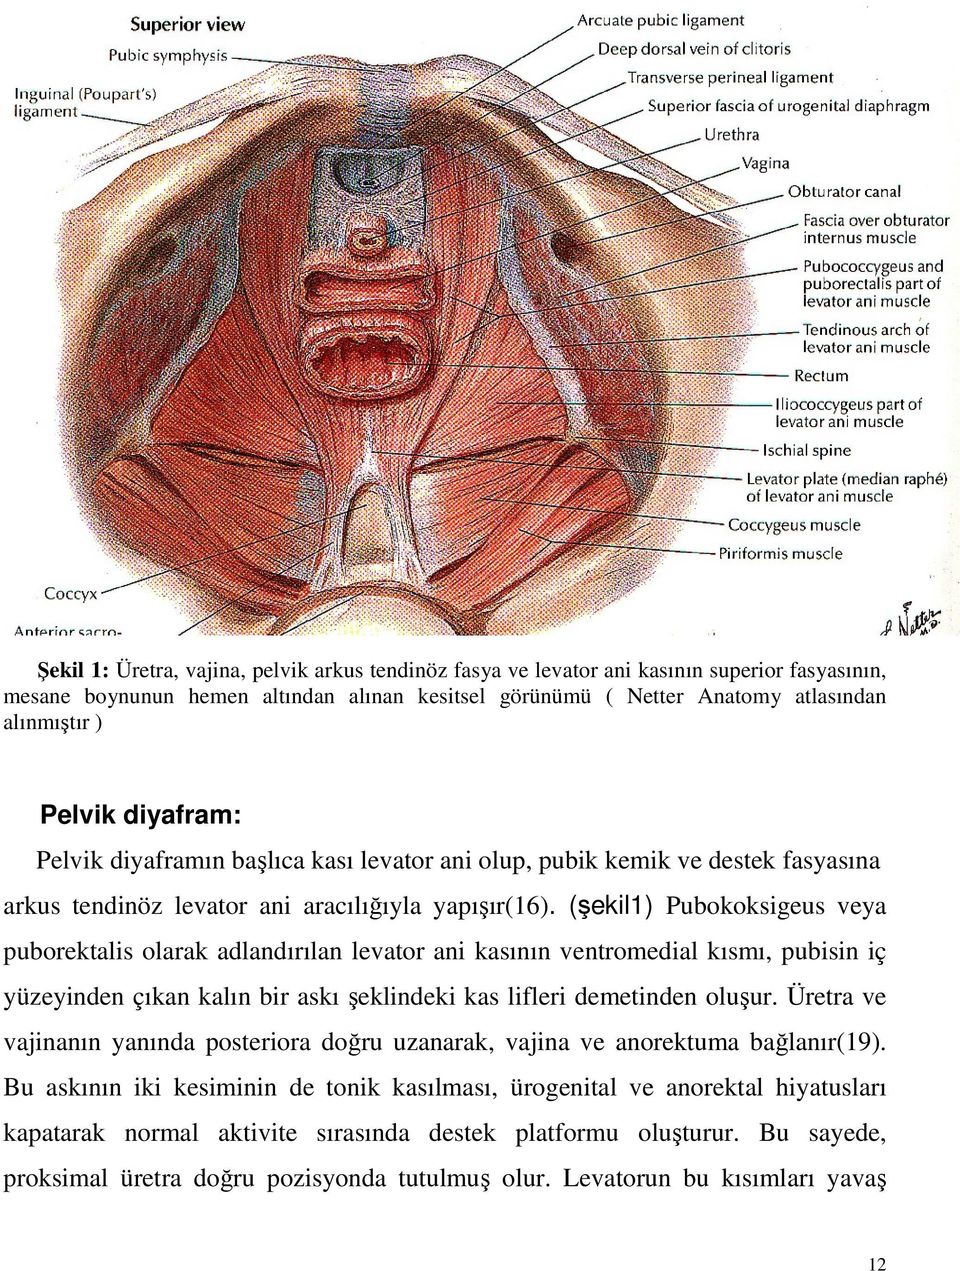 (şekil1) Pubokoksigeus veya puborektalis olarak adlandırılan levator ani kasının ventromedial kısmı, pubisin iç yüzeyinden çıkan kalın bir askı şeklindeki kas lifleri demetinden oluşur.